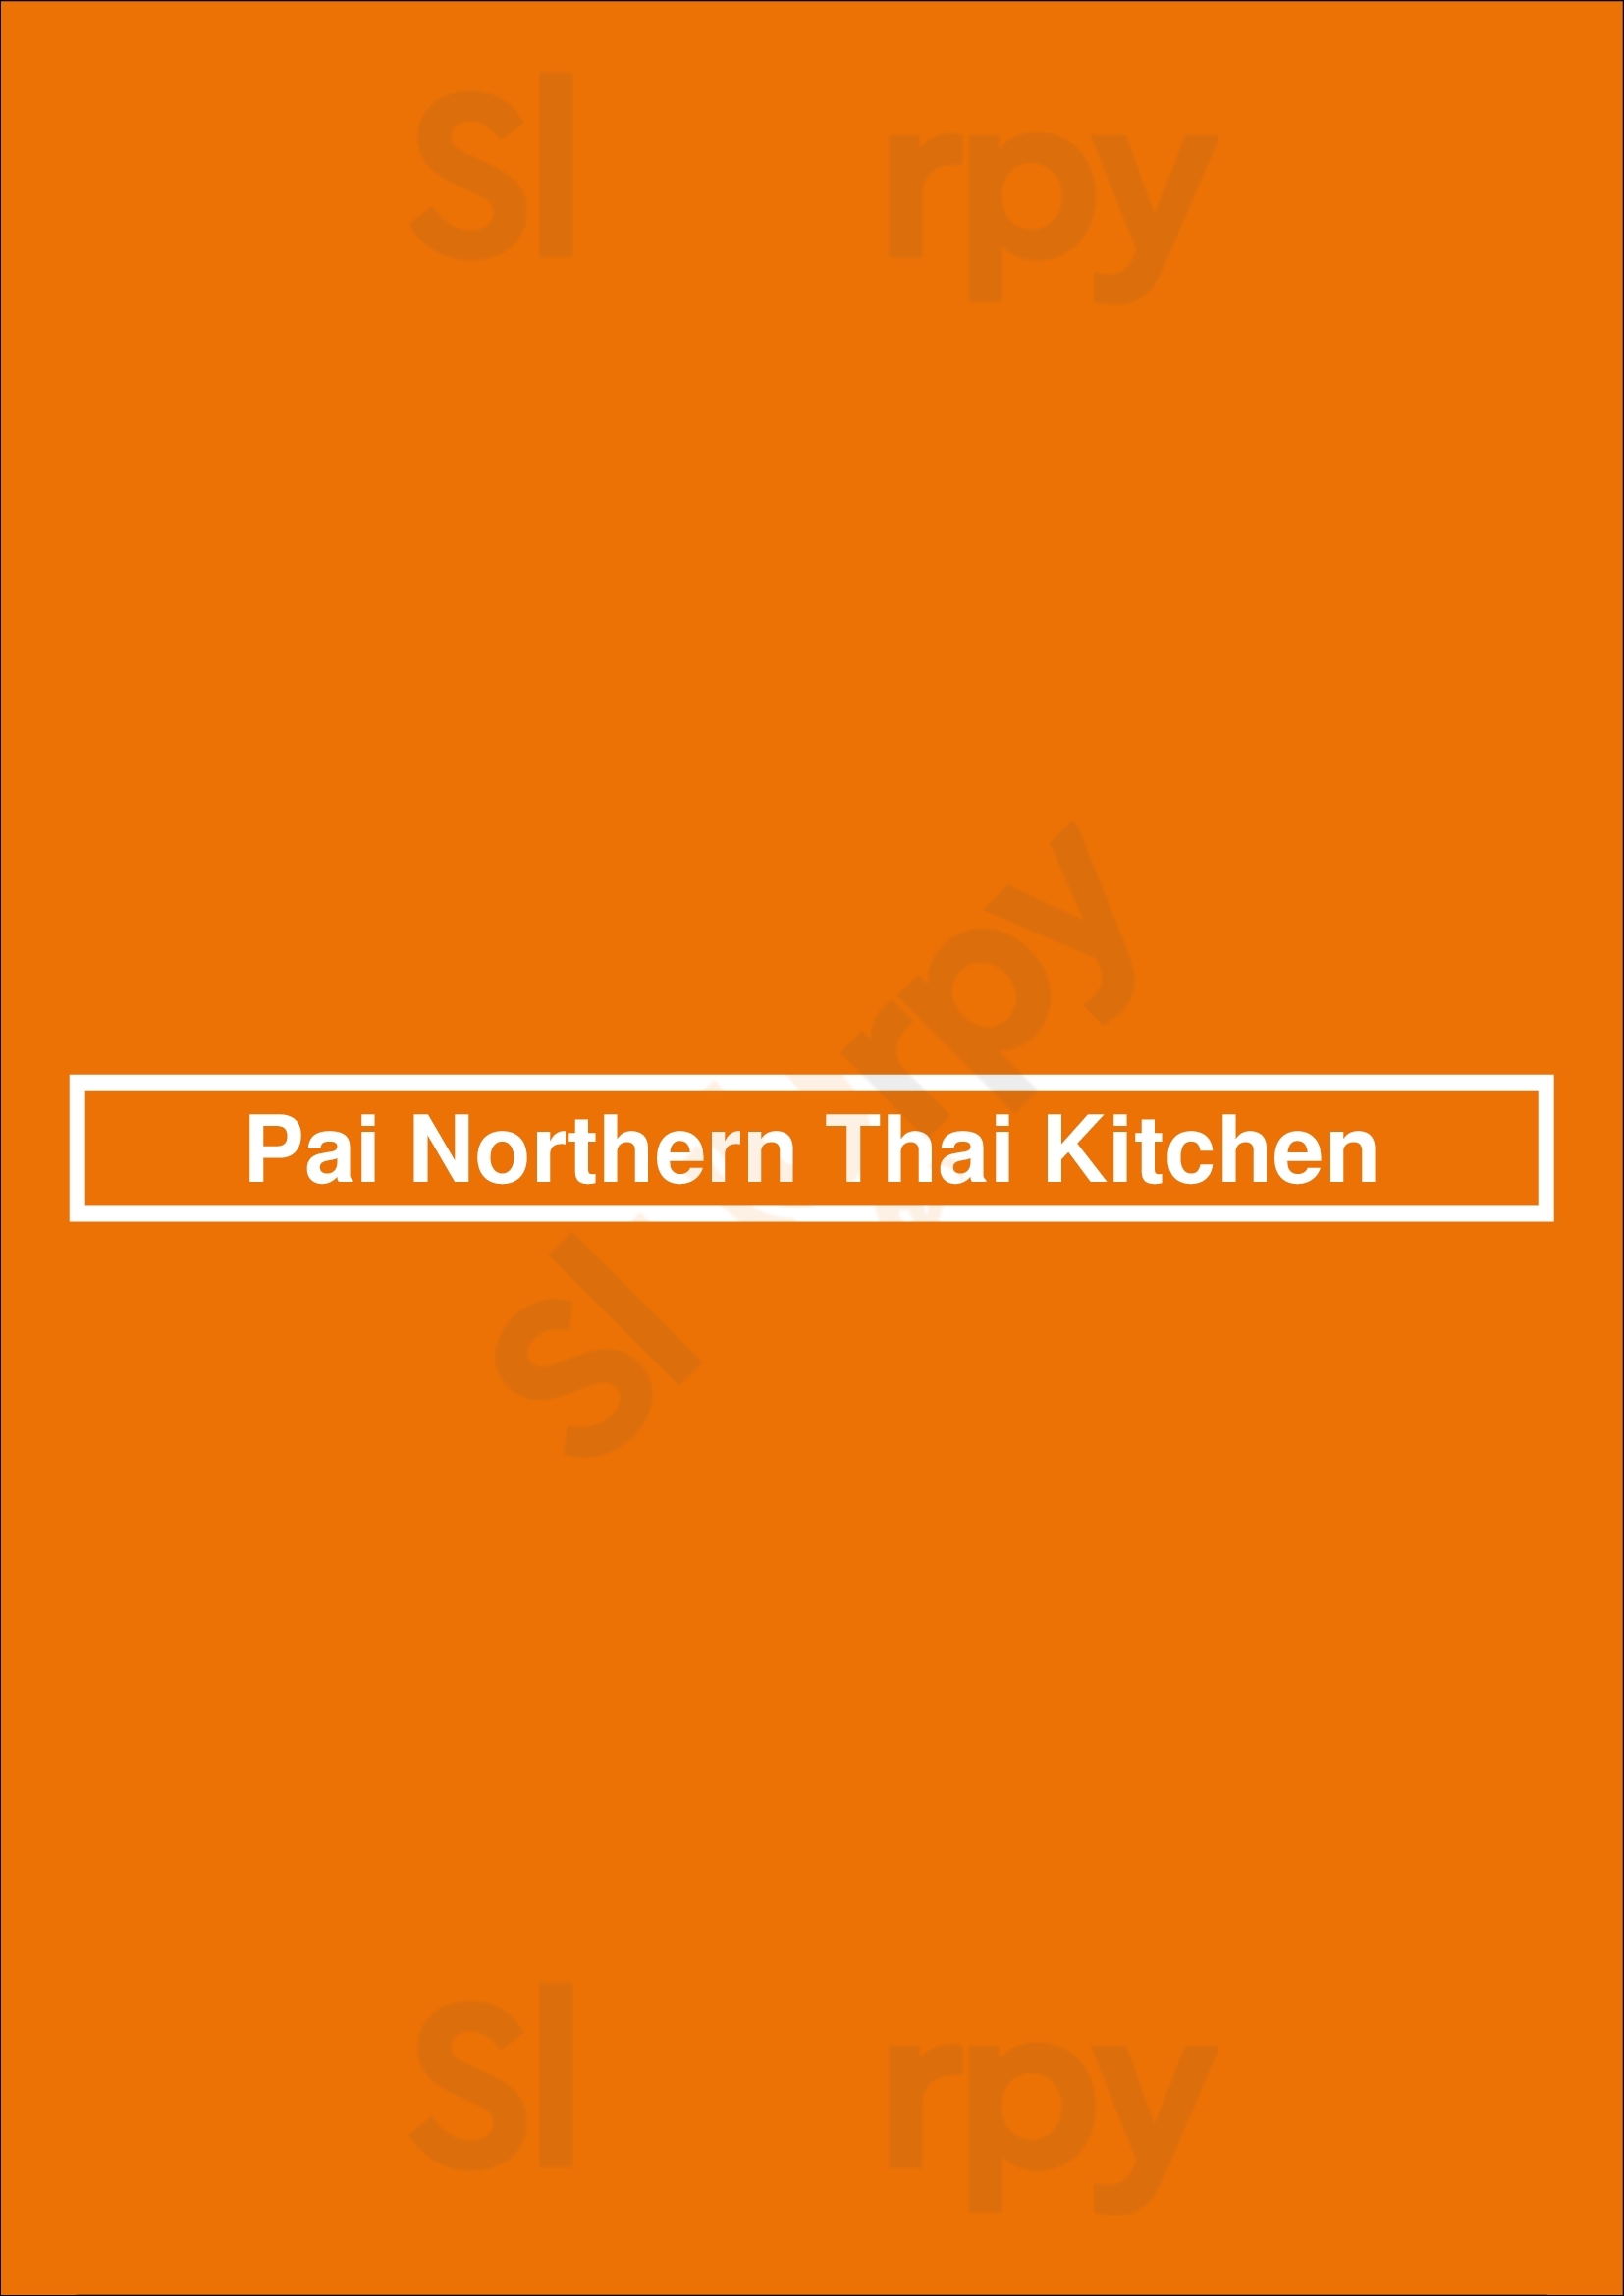 Pai Northern Thai Kitchen Toronto Menu - 1